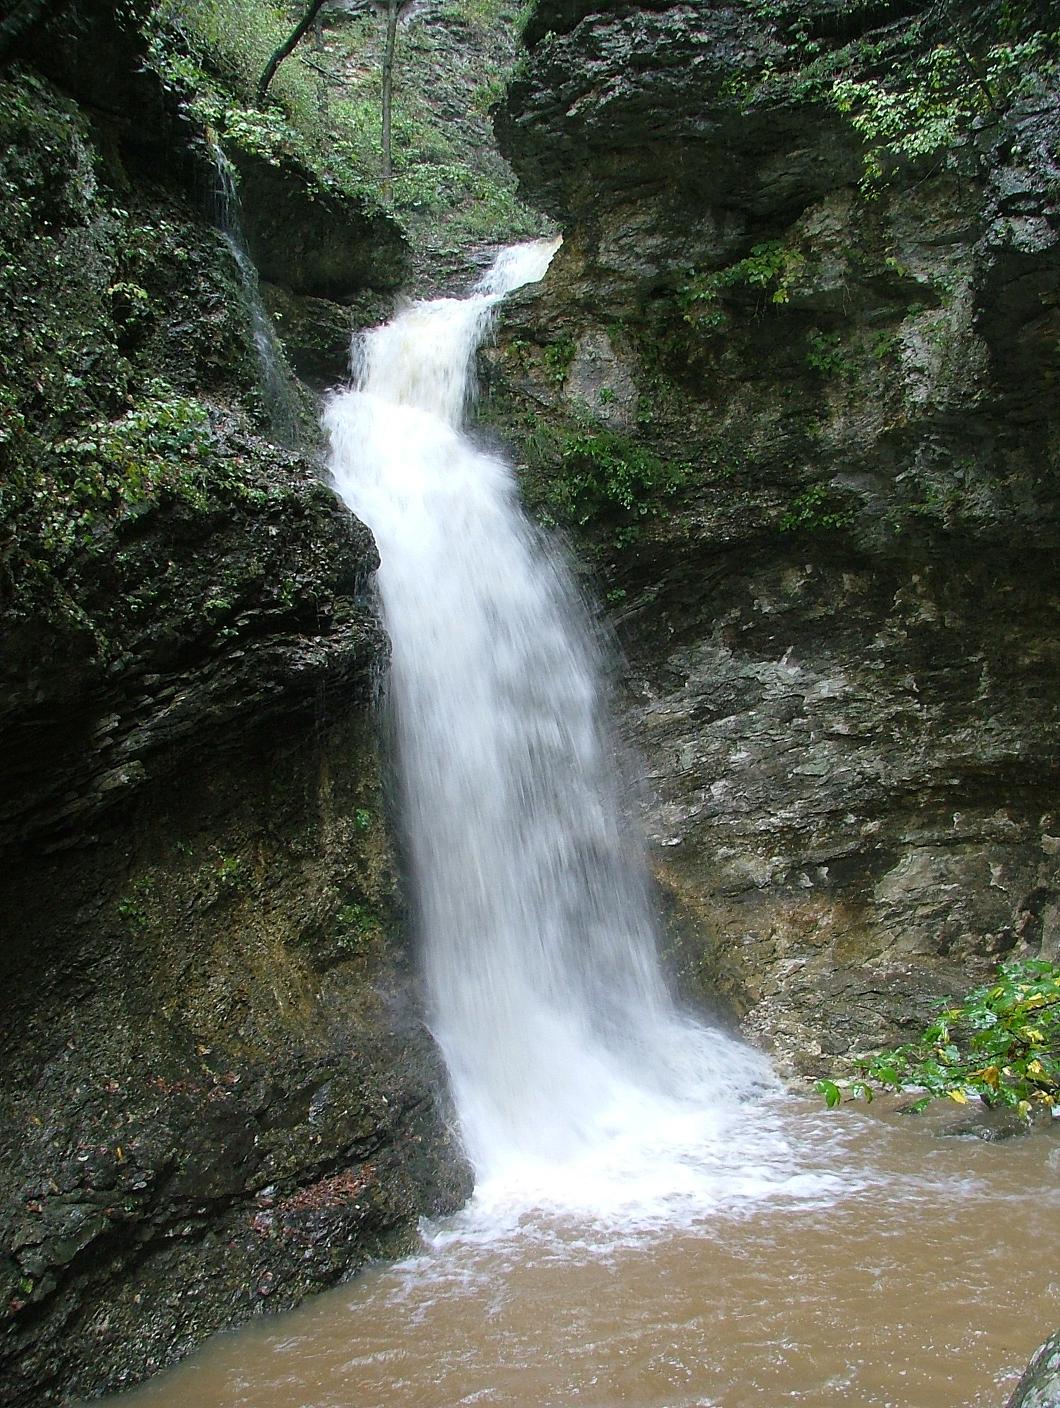 Eden Falls at Lost Valley